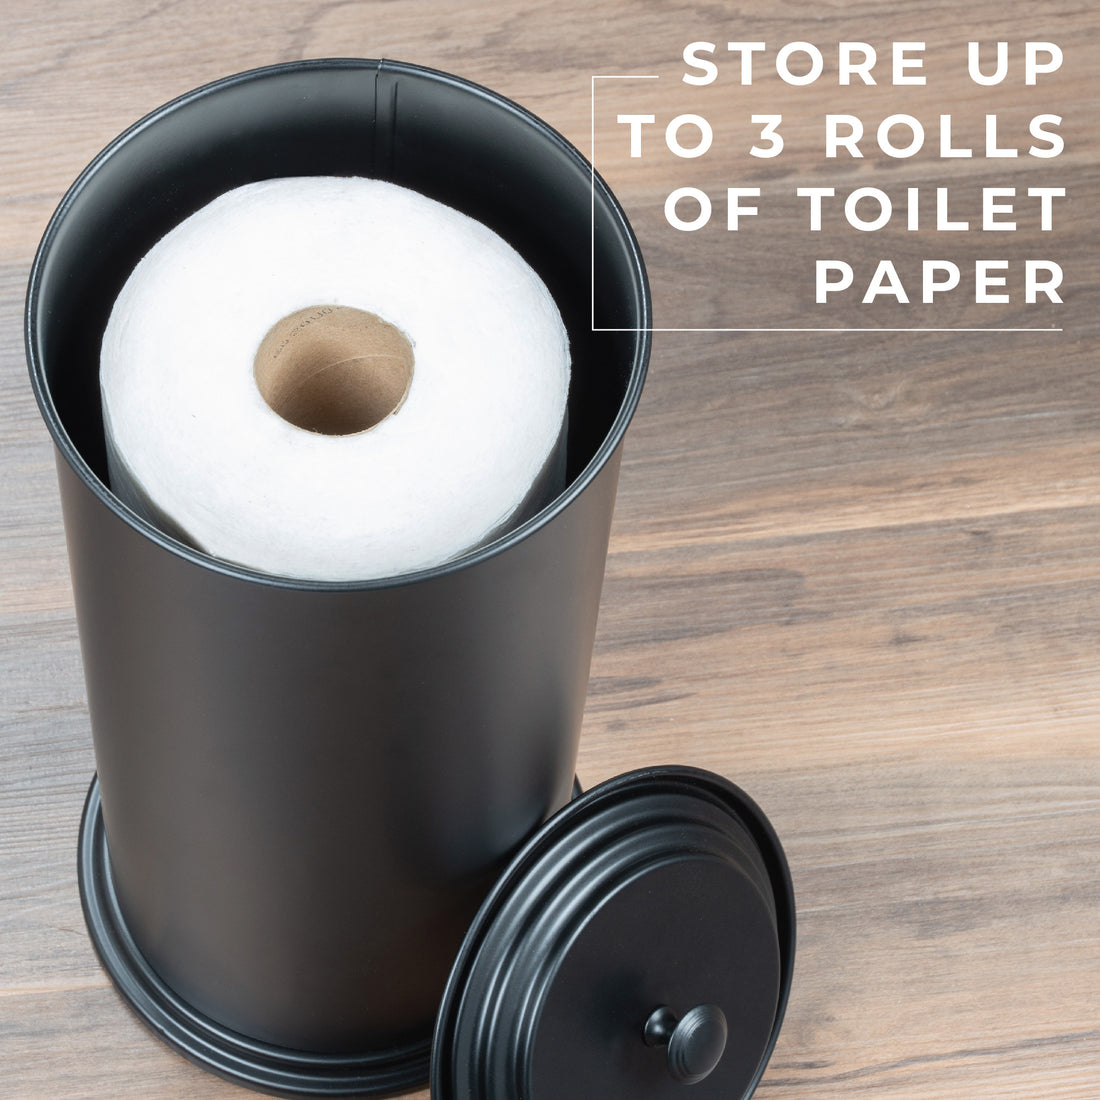 Matte black freestanding toilet paper holder